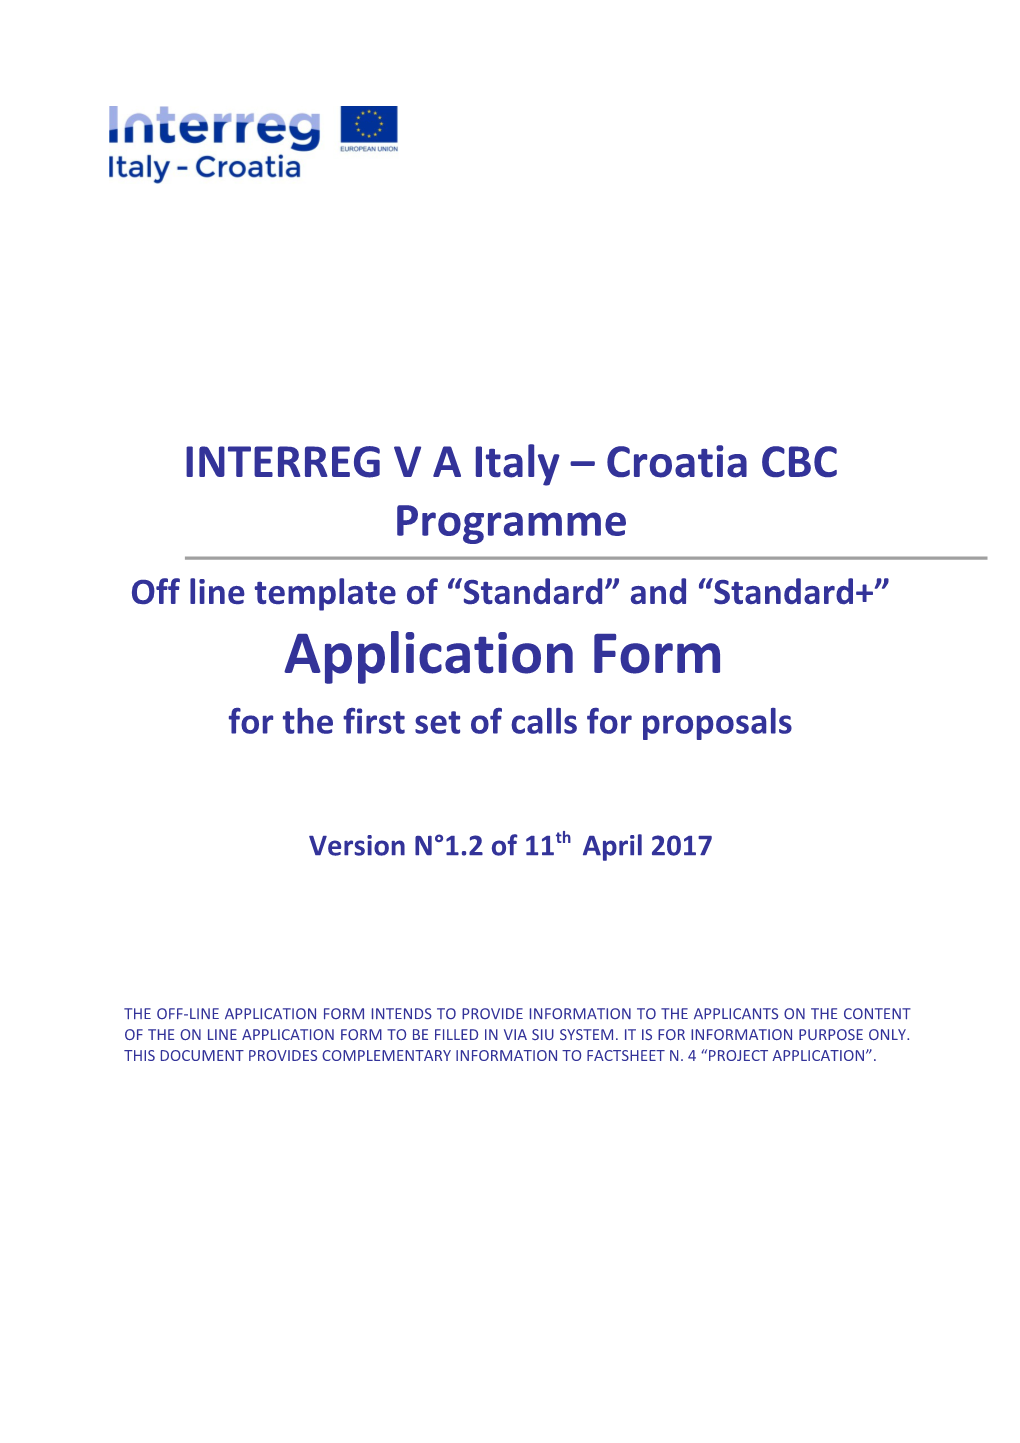 Italy-Croatia CBC Programme